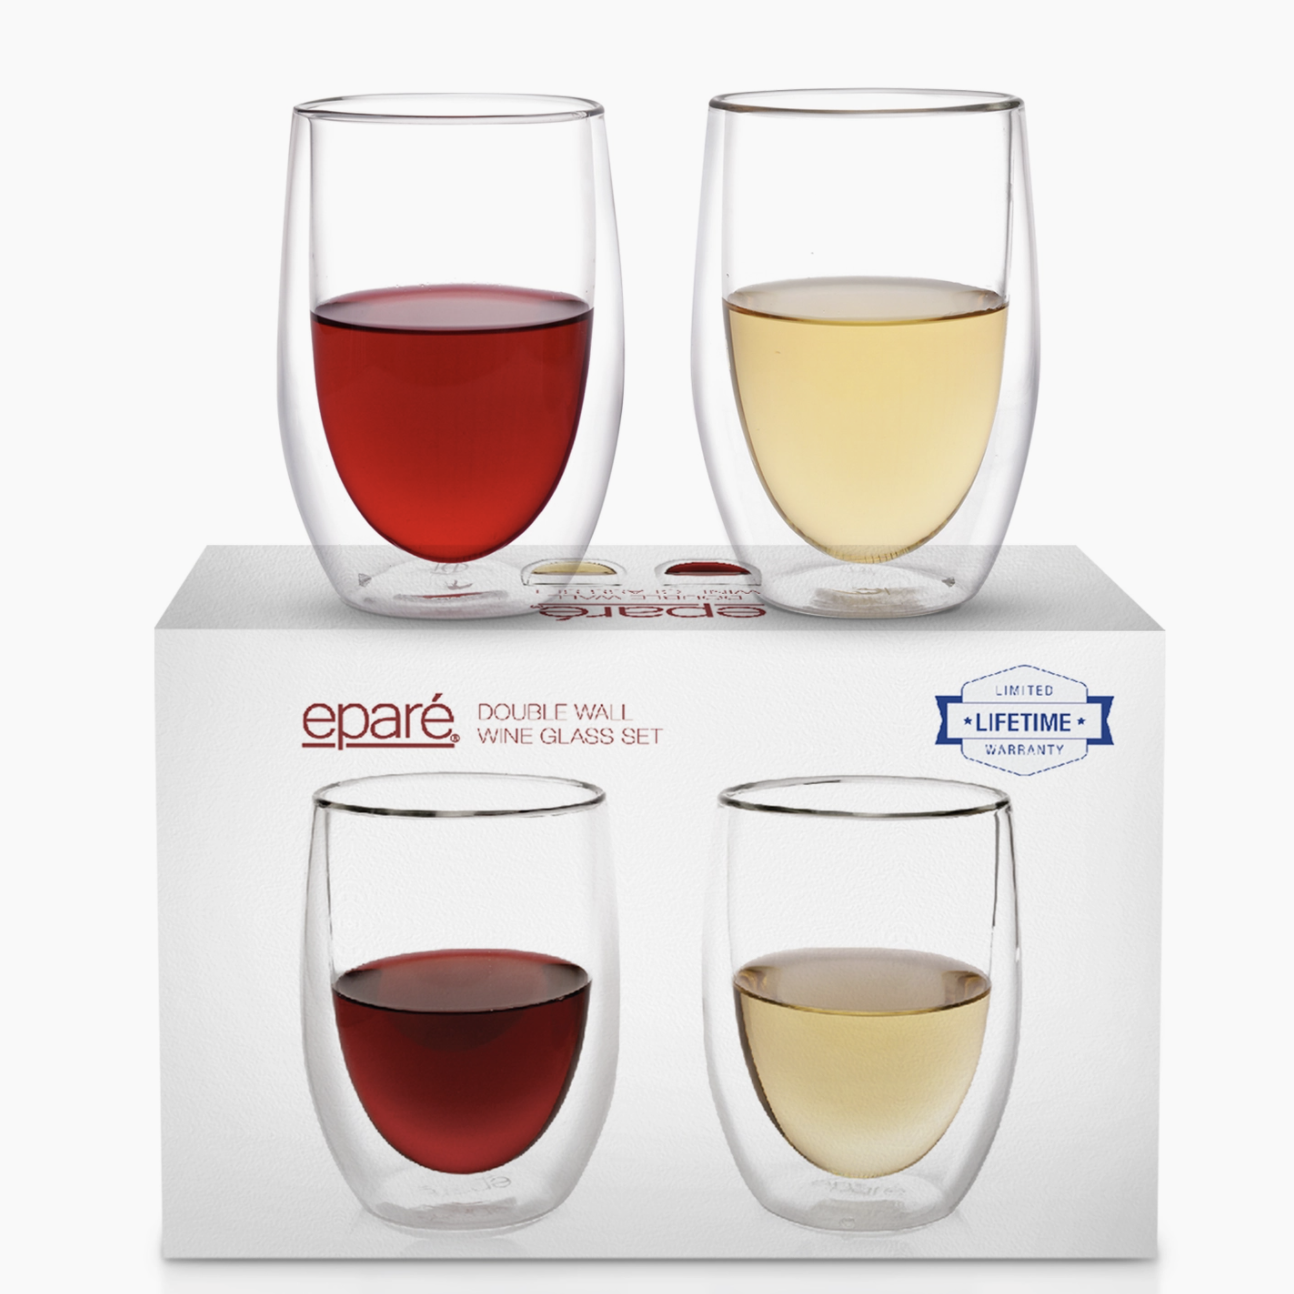 https://cdn.shoplightspeed.com/shops/642682/files/36760908/epare-double-wall-wine-glasses.jpg